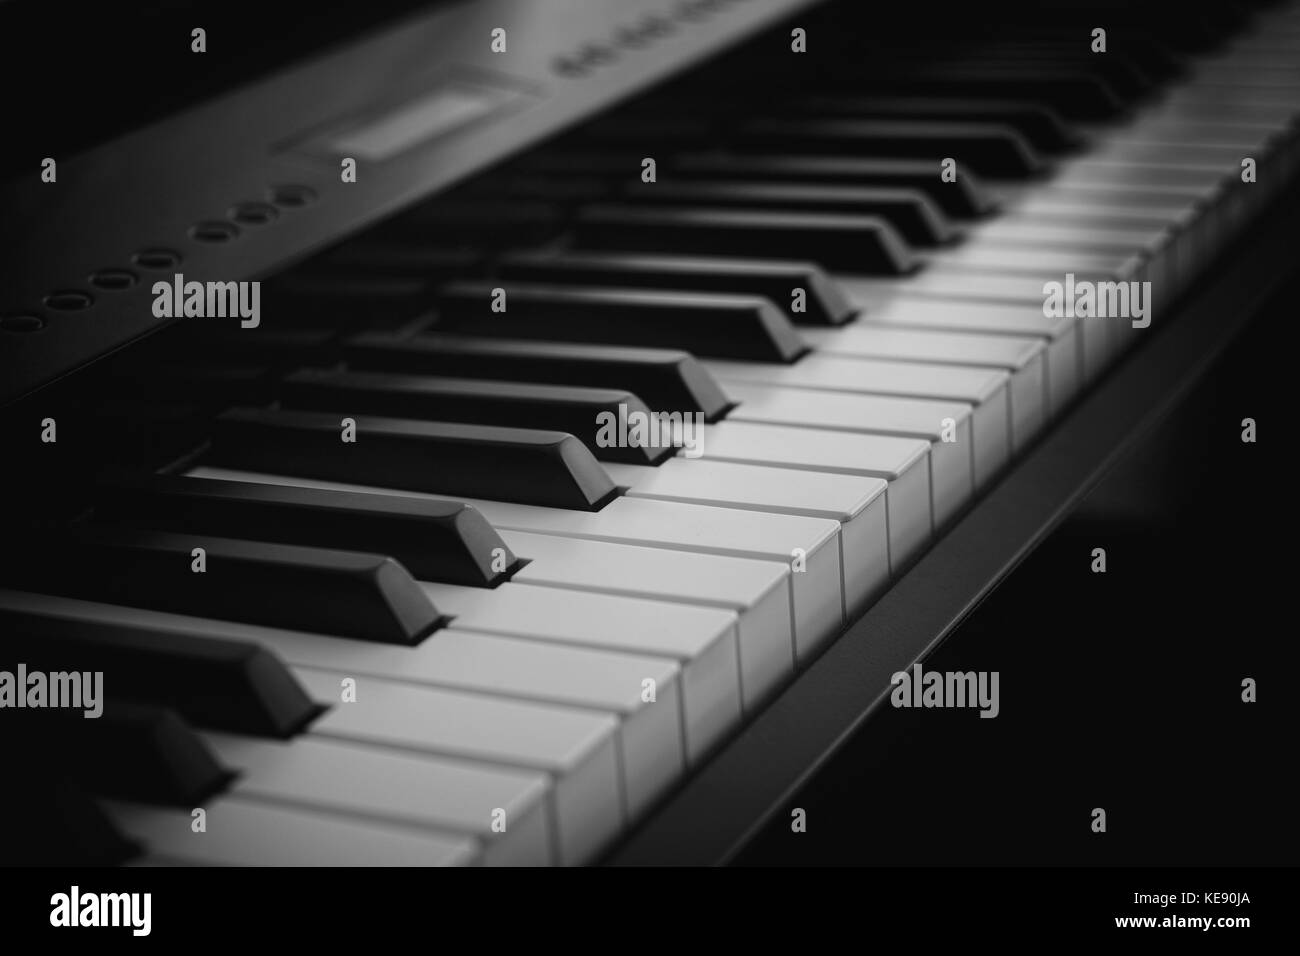 Clavier piano numérique de nuit. close up. Banque D'Images